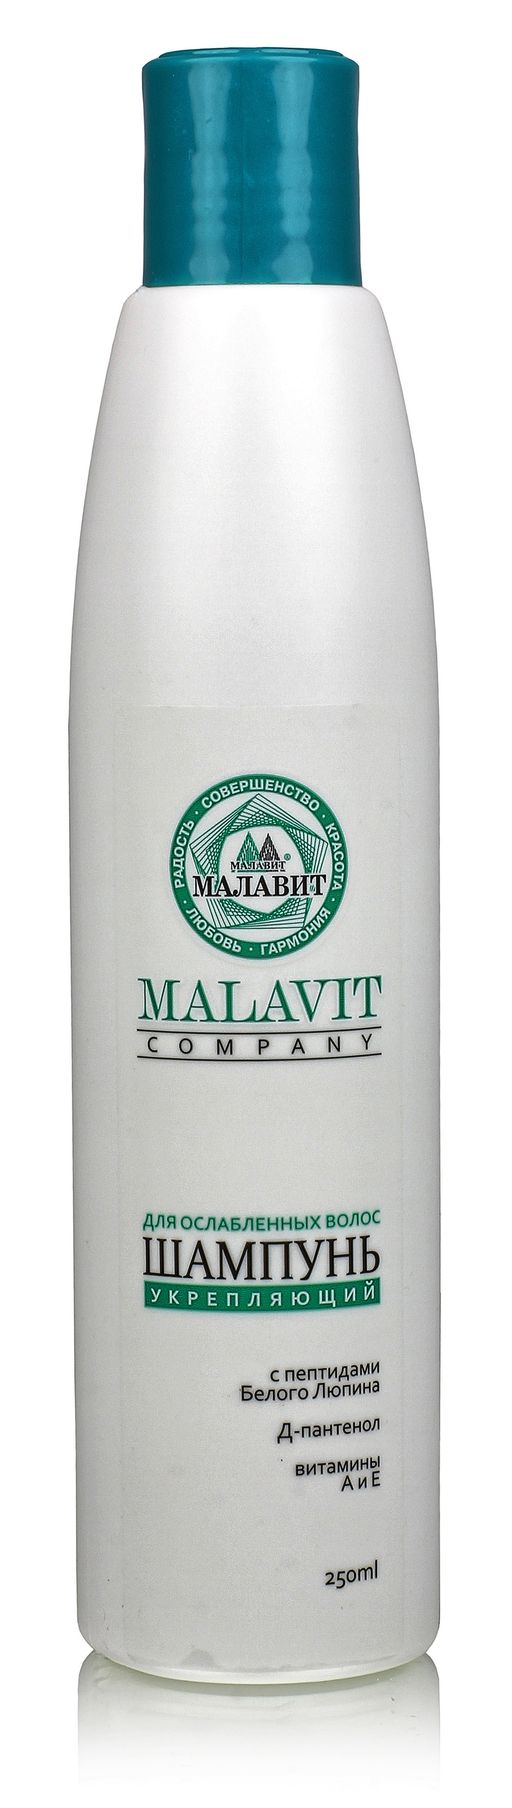 Малавит шампунь с пептидами белого люпина, шампунь, 250 мл, 1 шт.